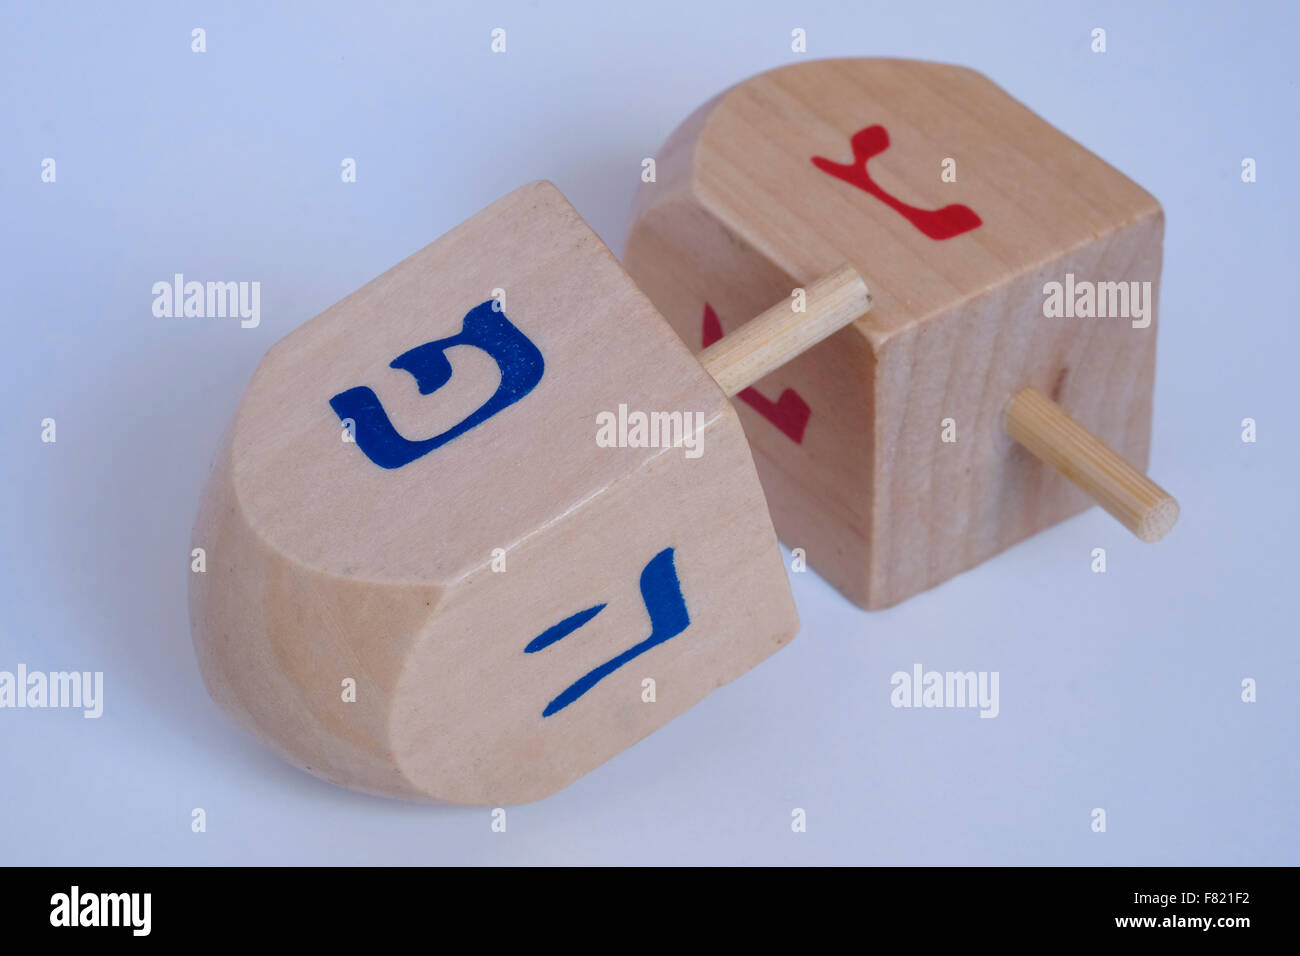 Holz- Dreidel ein traditionelles Spielzeug mit hebräischen Alphabet während der jüdische Feiertag von Chanukka, das Lichterfest gespielt Stockfoto